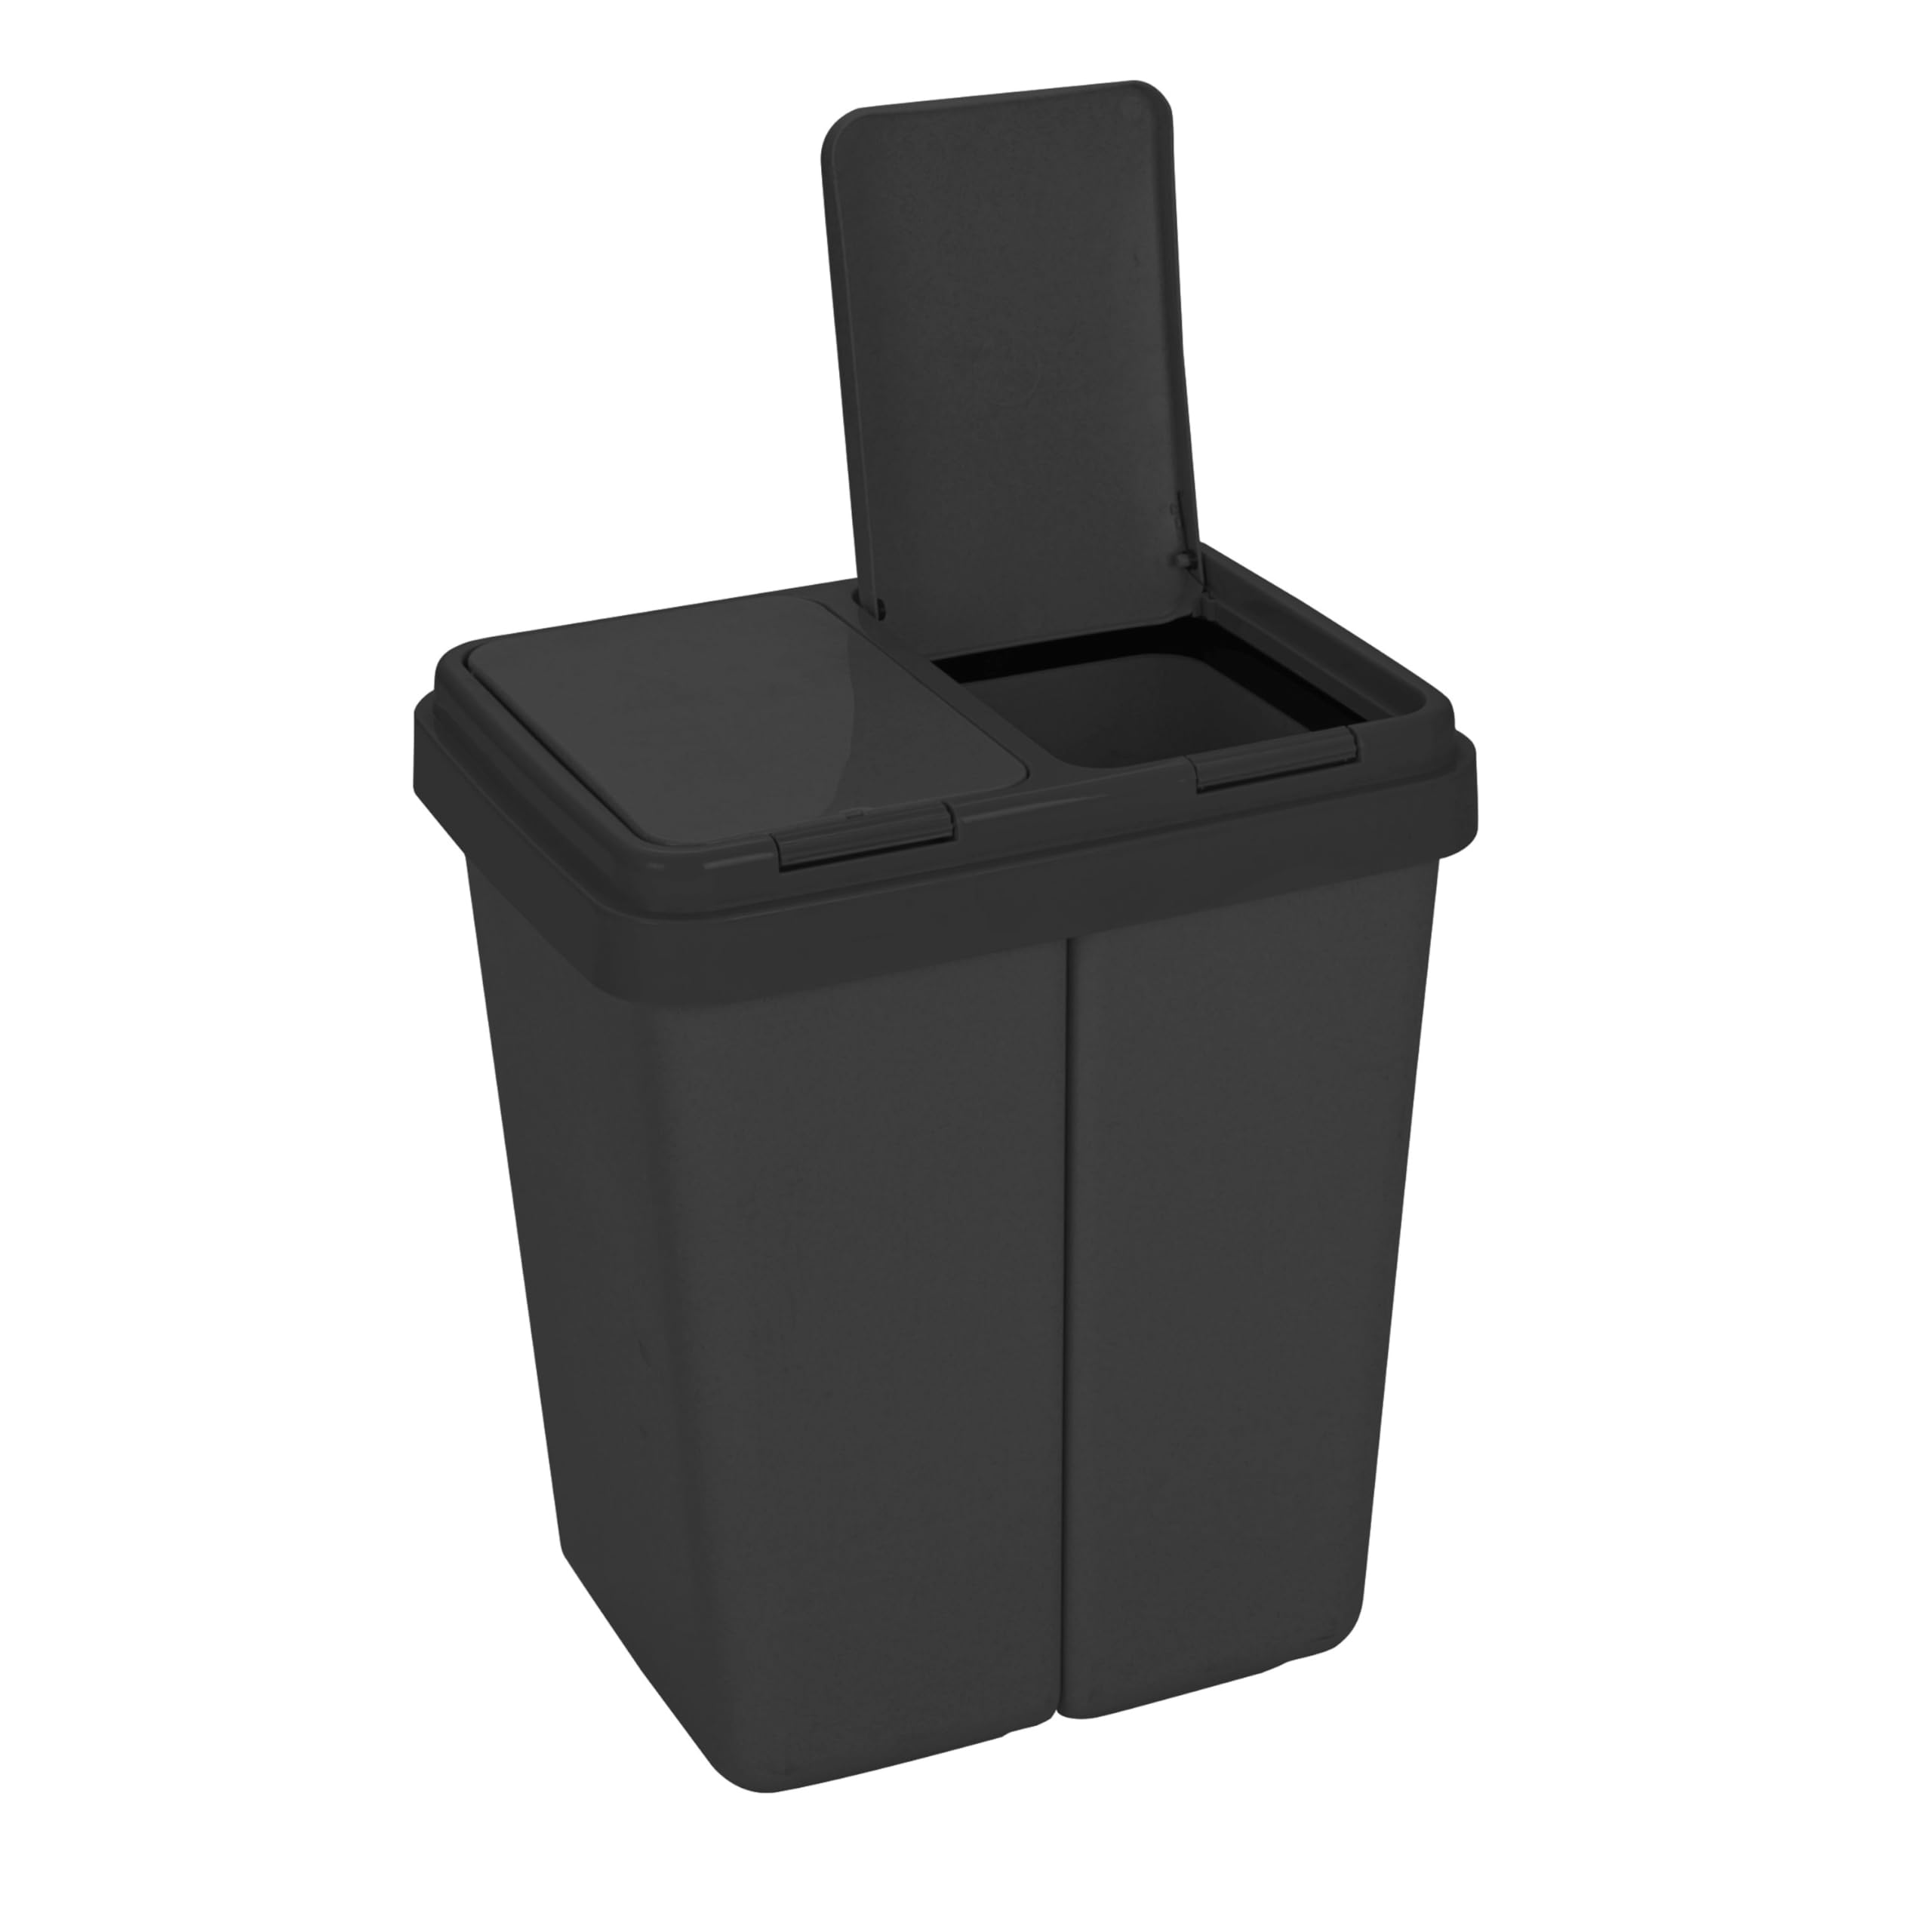 Ribelli Zweimer Duo Müllbehälter mit Deckel 2 x ca. 25 Liter, Kunststoff Mülleimer für die Küche geruchsdichter Abfalleimer Mülltrennsystem, ca. 45 x 32 x 51 cm, Schwarz, 502000